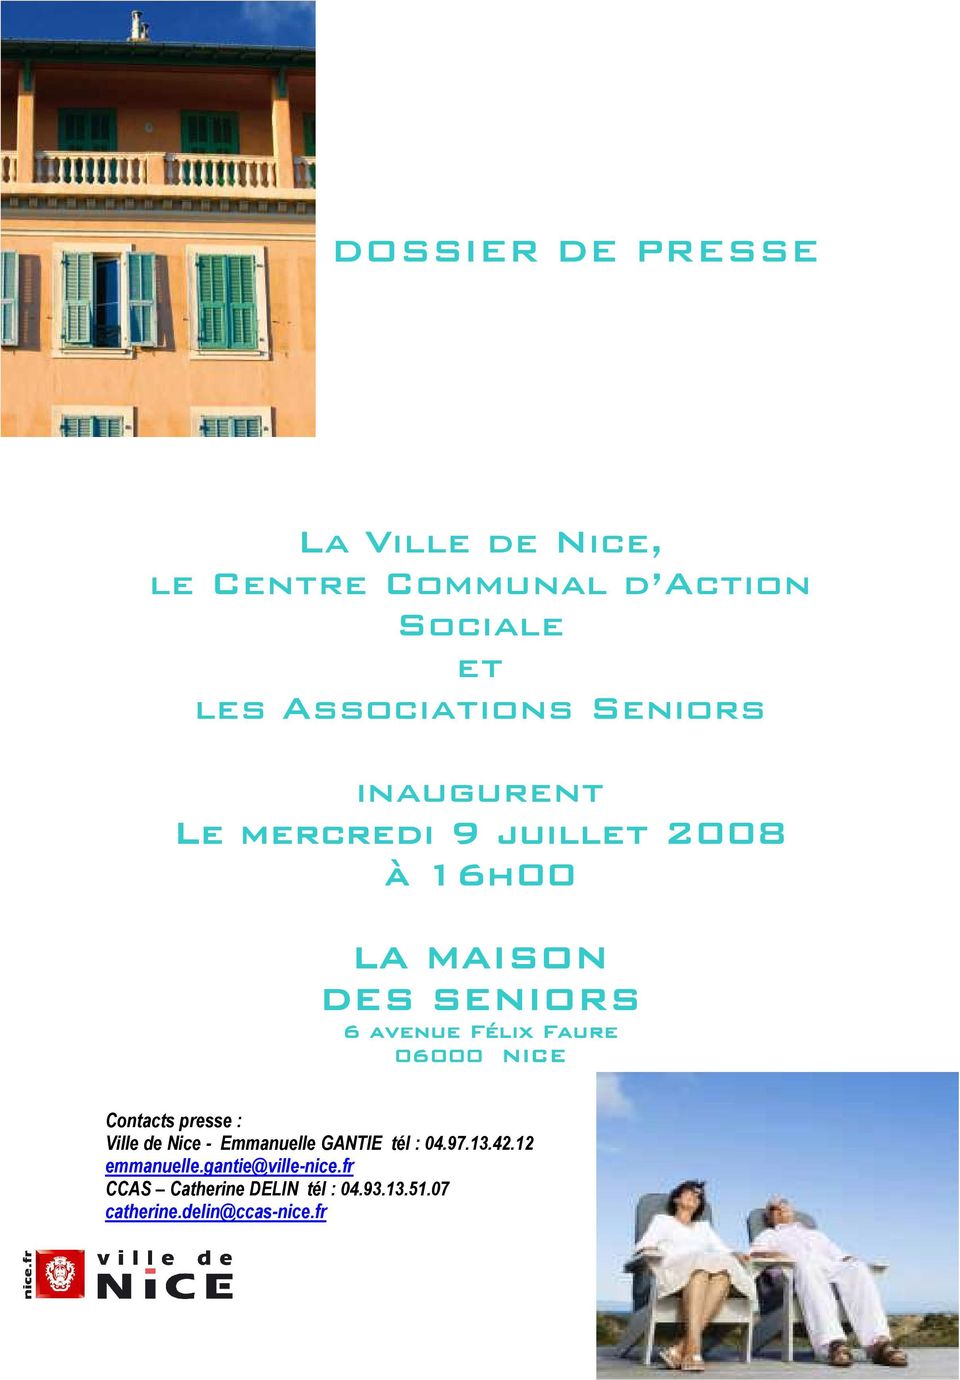 Faure 06000 NICE Contacts presse : Ville de Nice - Emmanuelle GANTIE tél : 04.97.13.42.